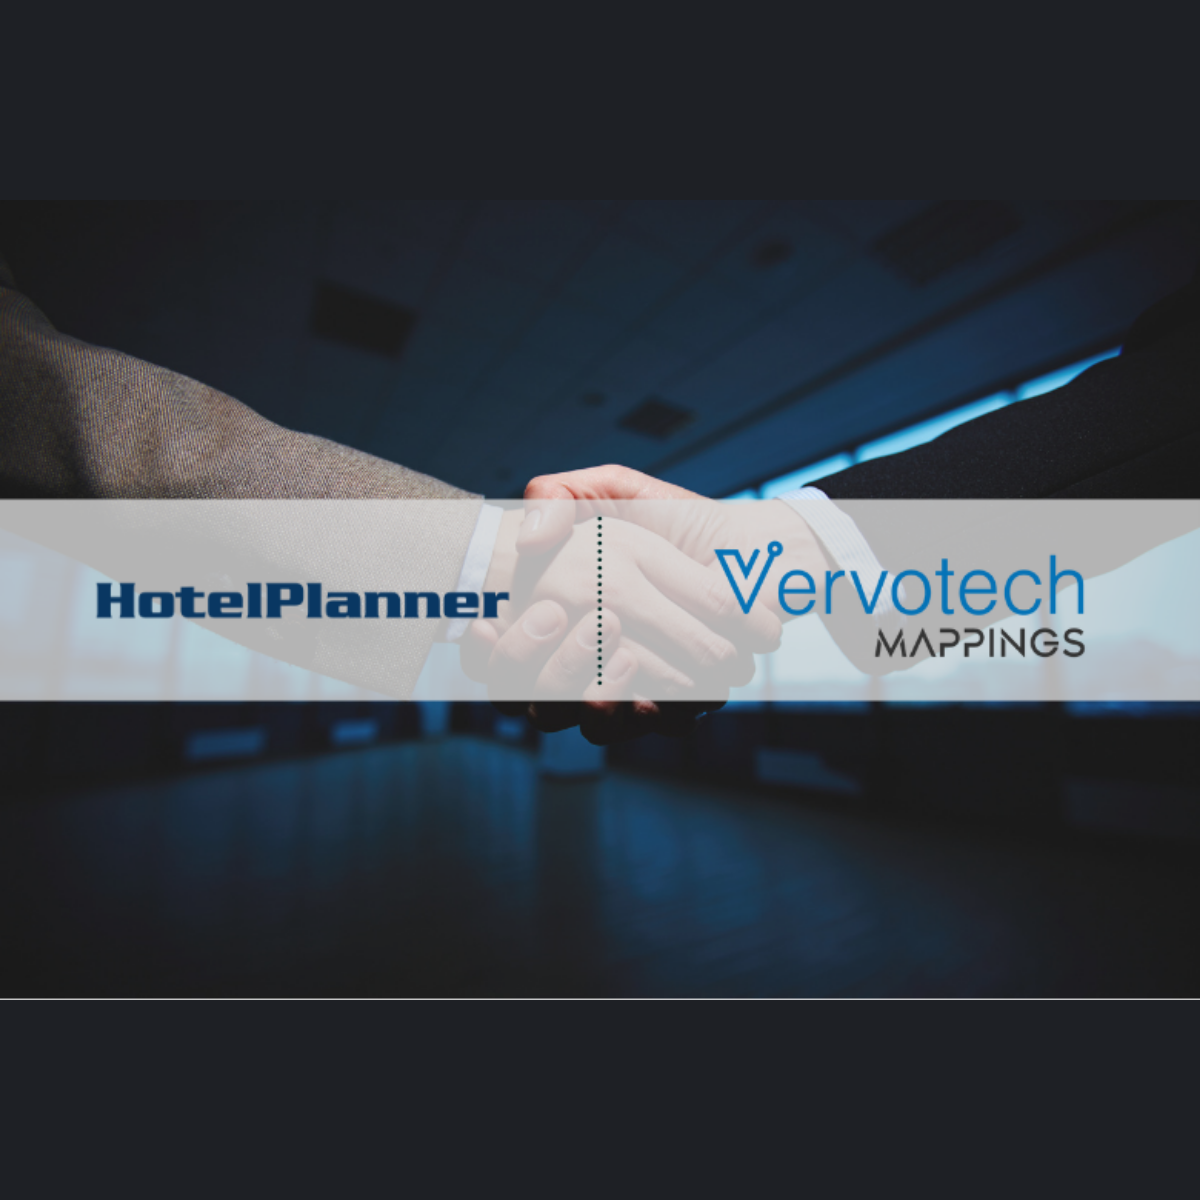 L'IA au service de l'expérience client - Vervotech annonce le renouvellement de son partenariat technologique avec HotelPlanner